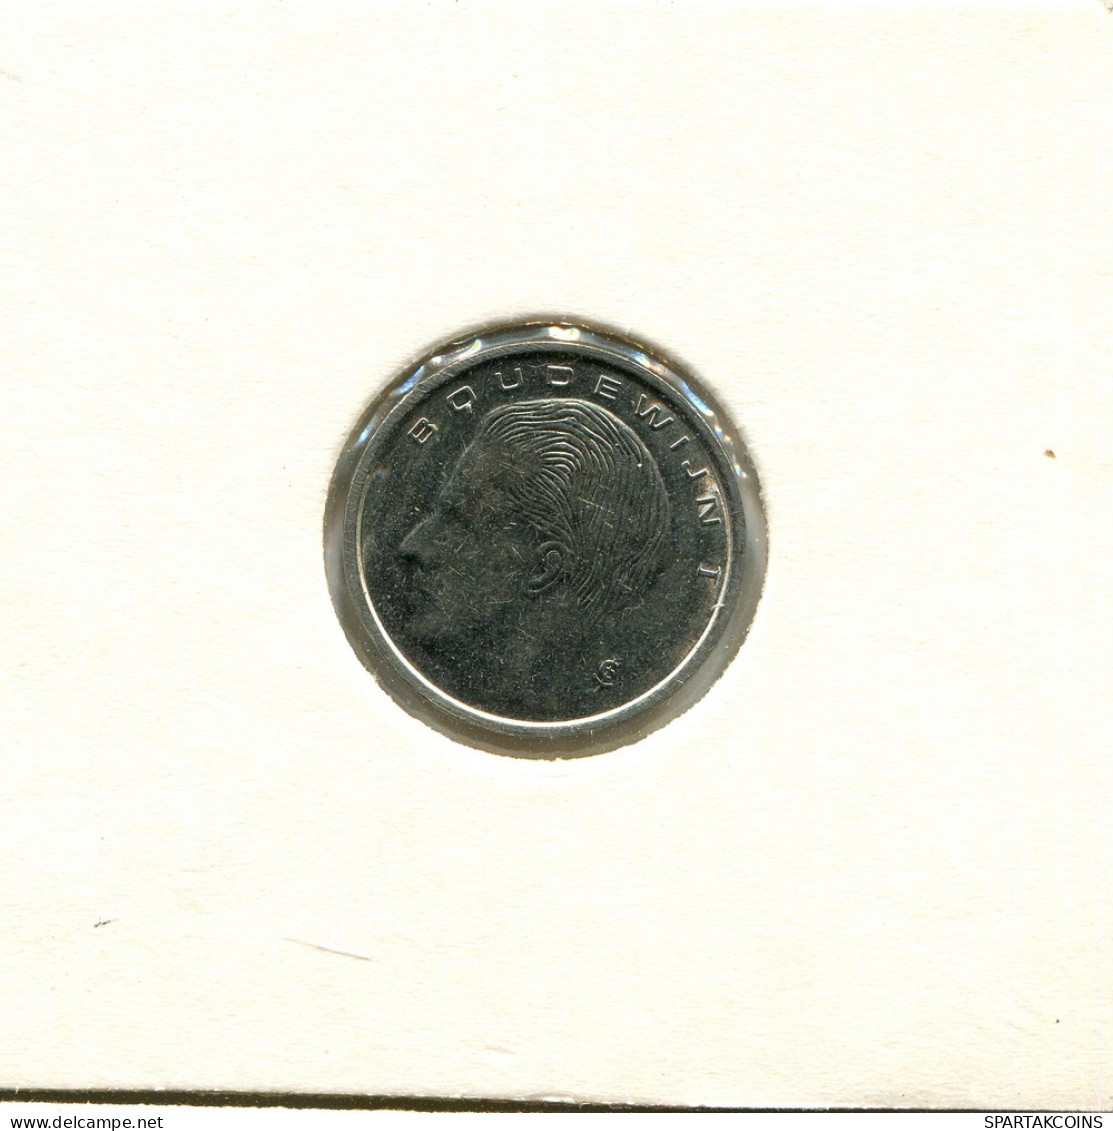 1 FRANC 1993 DUTCH Text BÉLGICA BELGIUM Moneda #AU086.E - 1 Frank